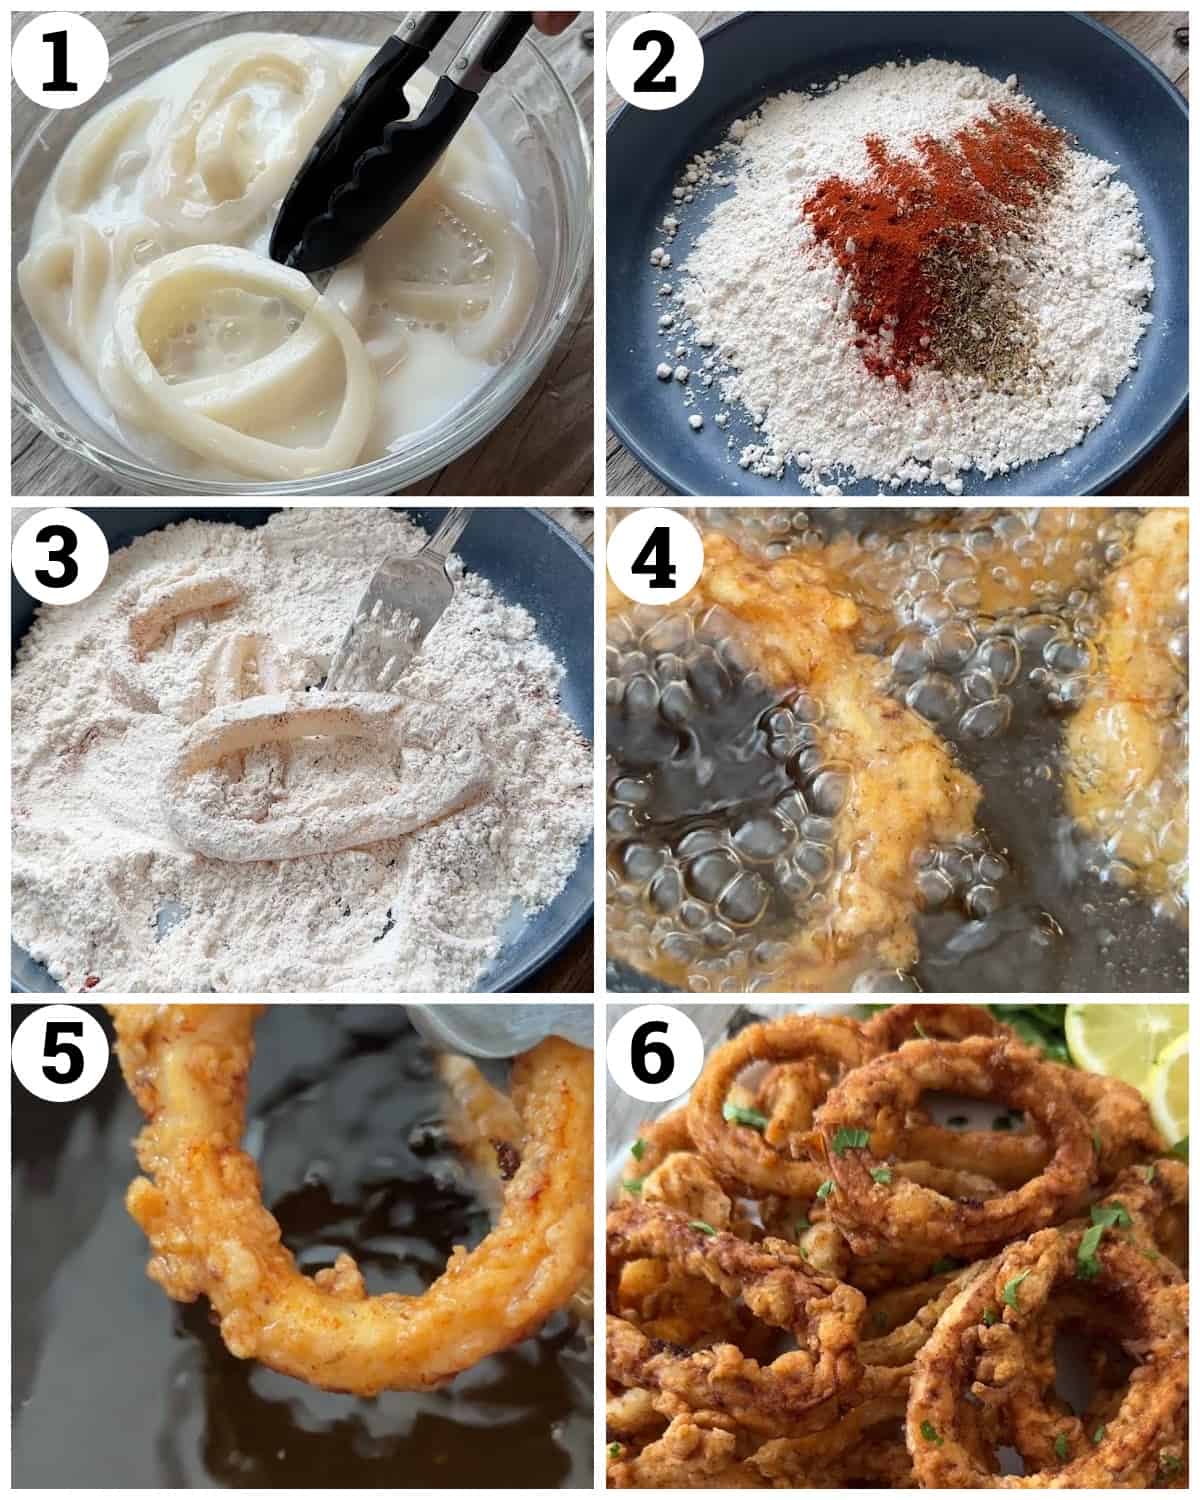 Soak the calamari rings in milk then dredge in flour and fry until crispy. 